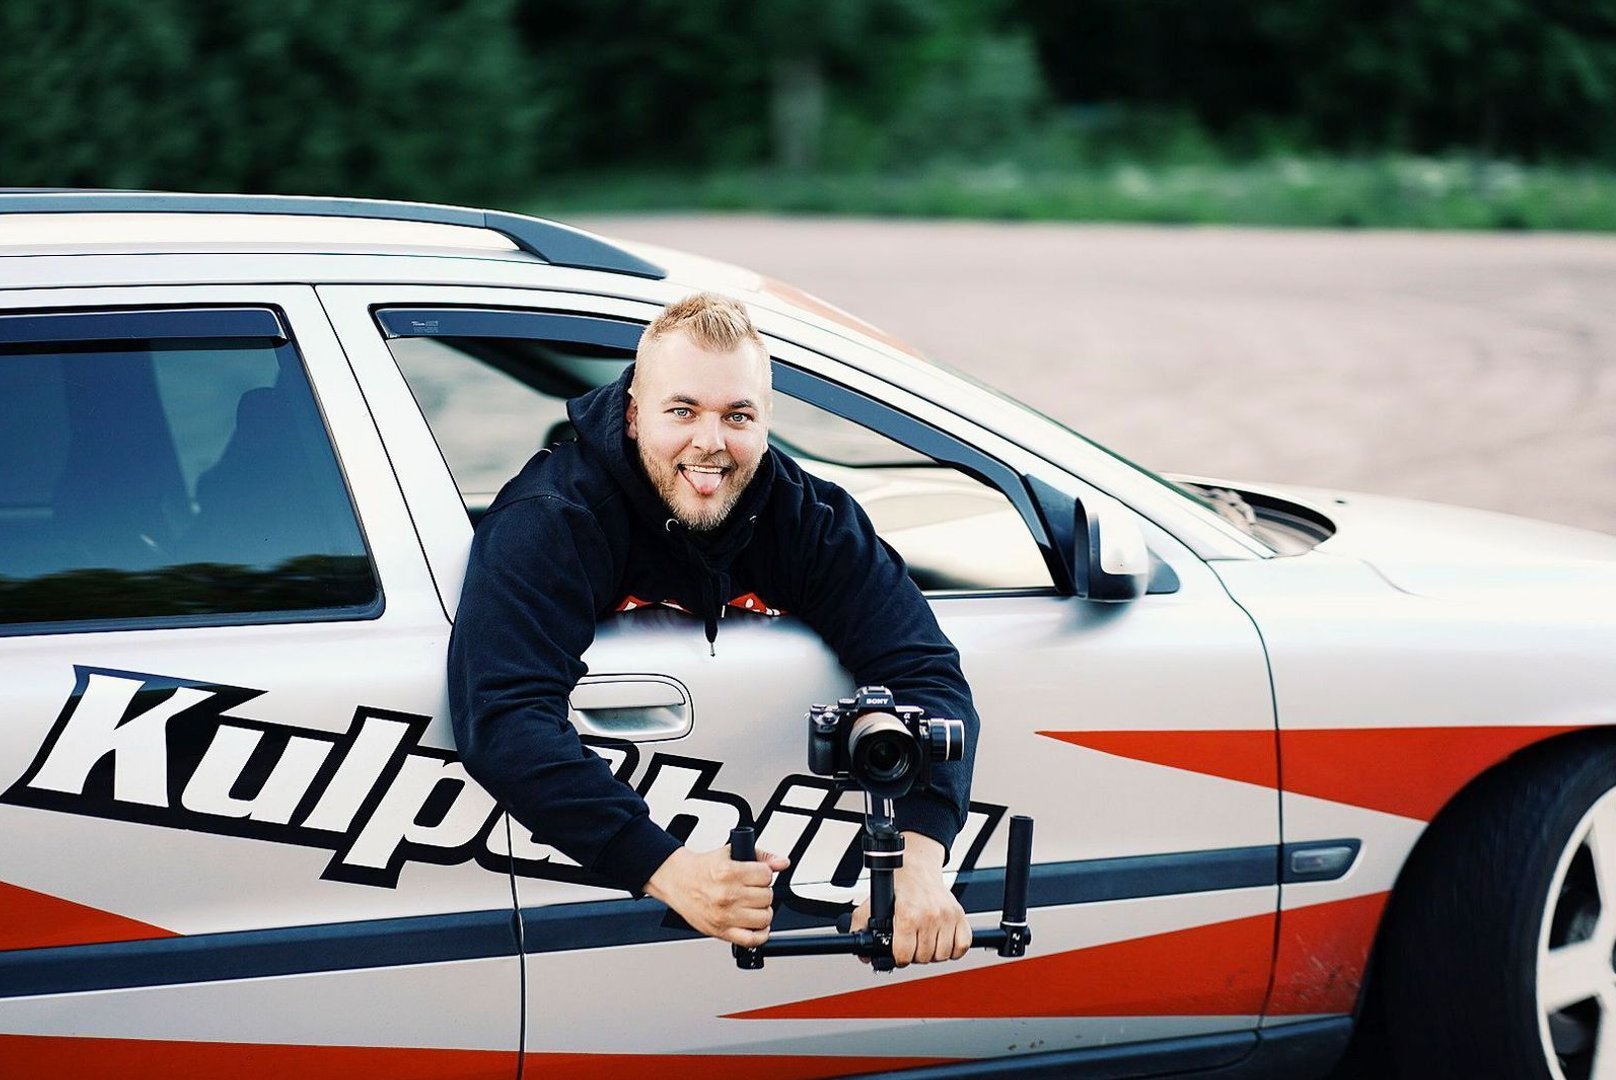 Adam Myllylä är känd för sin Youtubekanal Kul På Hjul. Han ställer ut sin Volvo 740 med ny look på Bilsport Performance & Custom Motor Show.